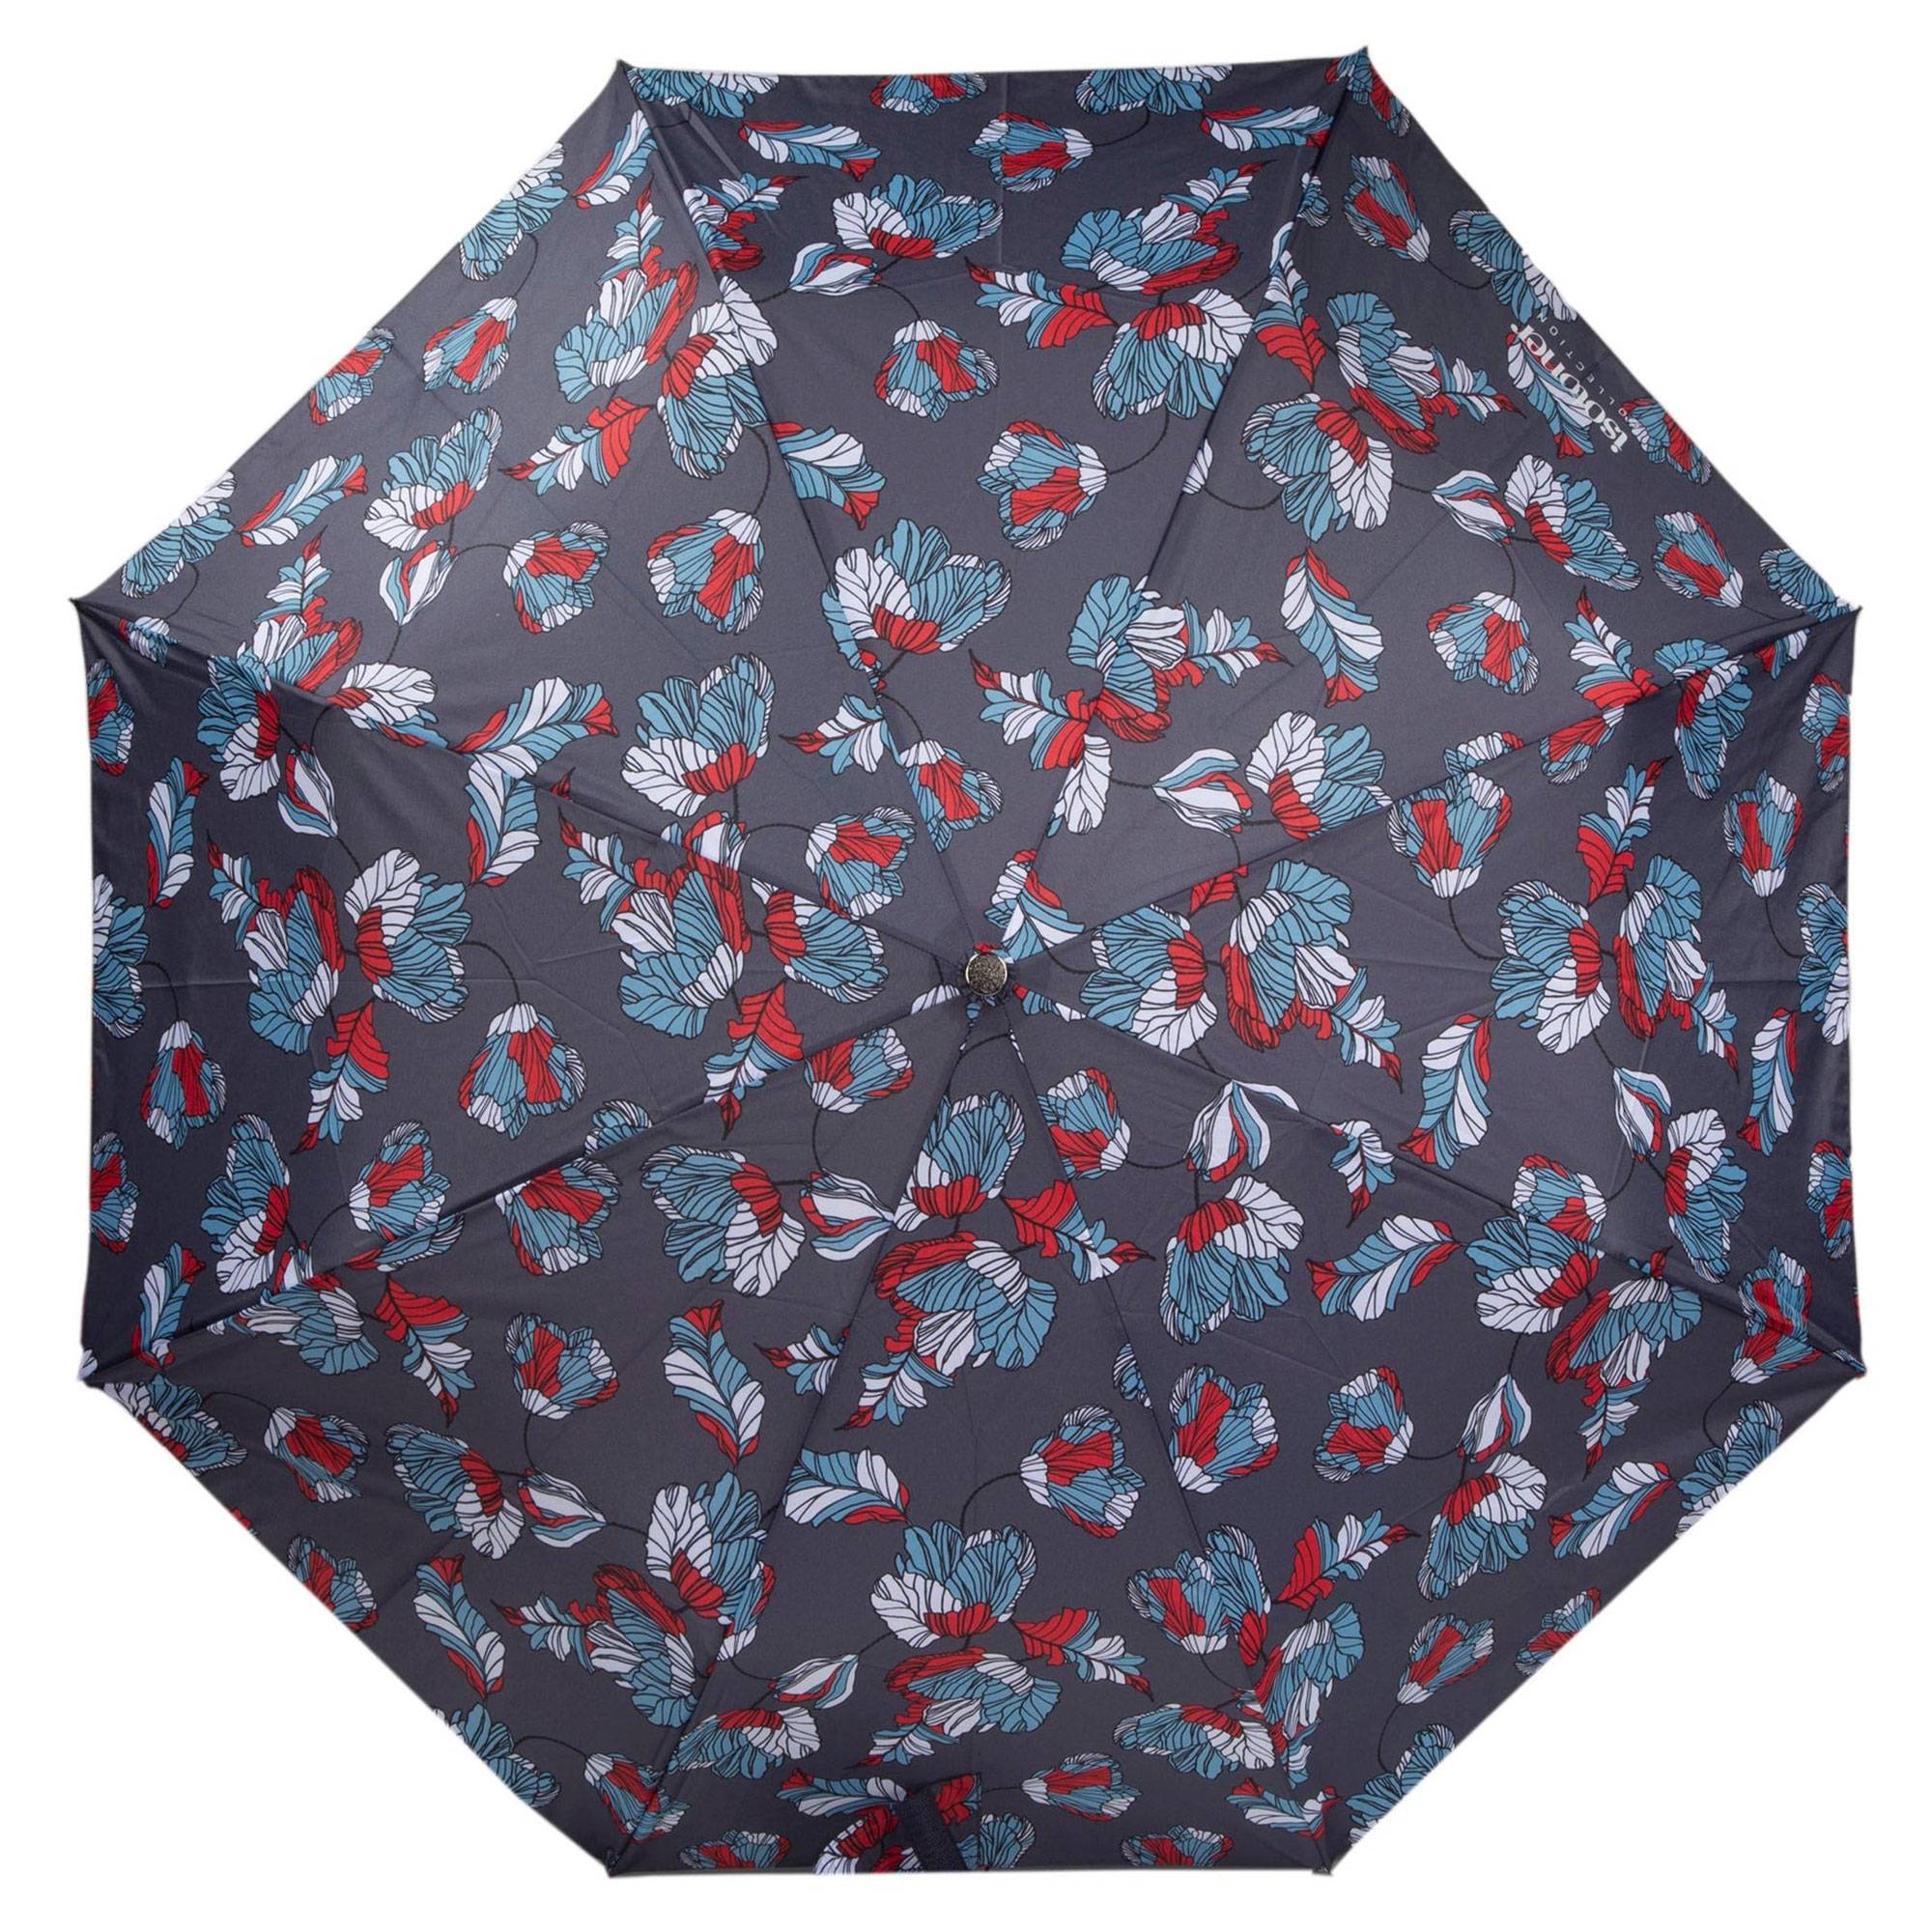 Parapluie Automatique Isotoner 09406 JPF couleur Fleur Japonaise, face